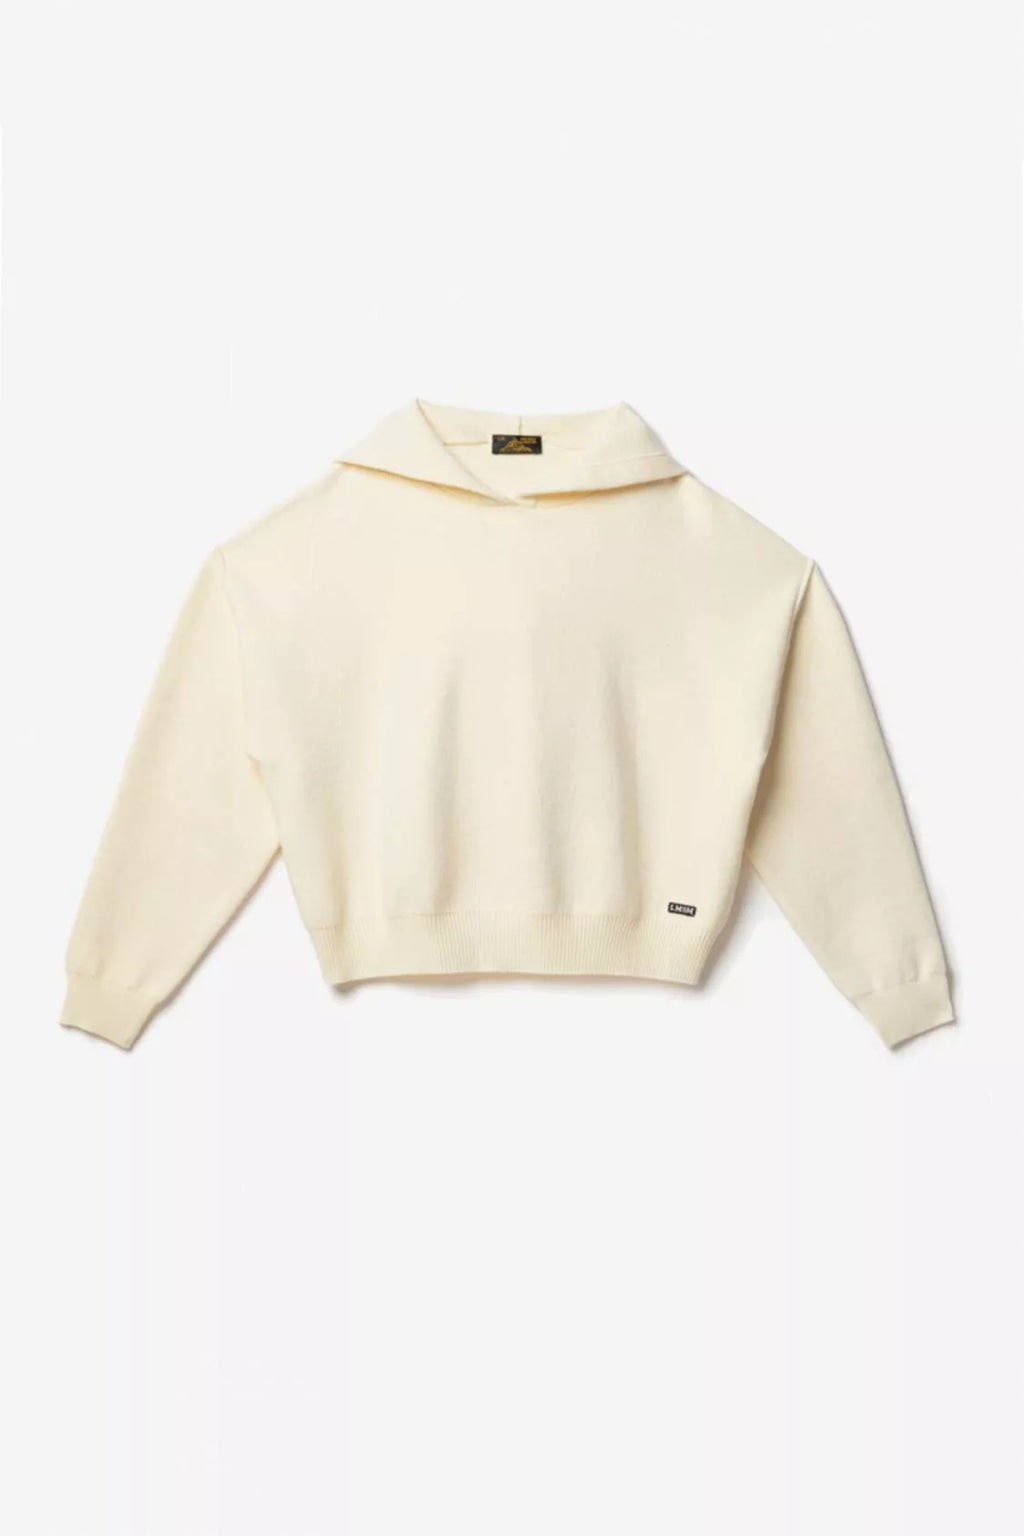 Sleena Hood Sweater